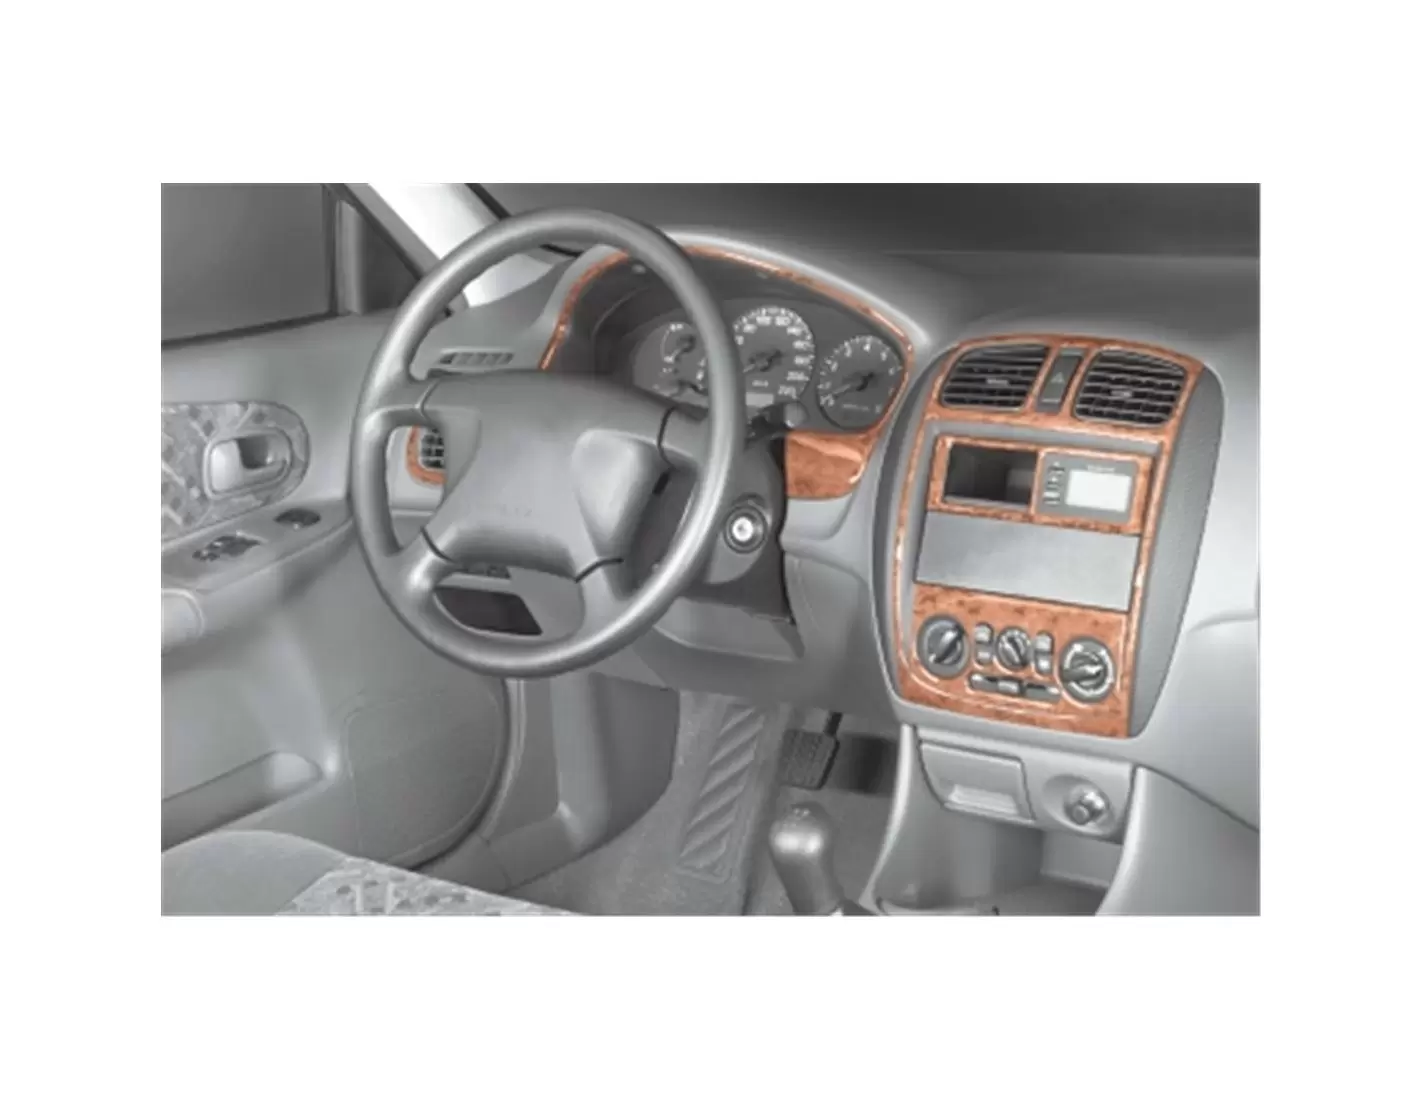 Mazda 323 FS 10.00-05.04 3M 3D Interior Dashboard Trim Kit Dash Trim Dekor 8-Parts